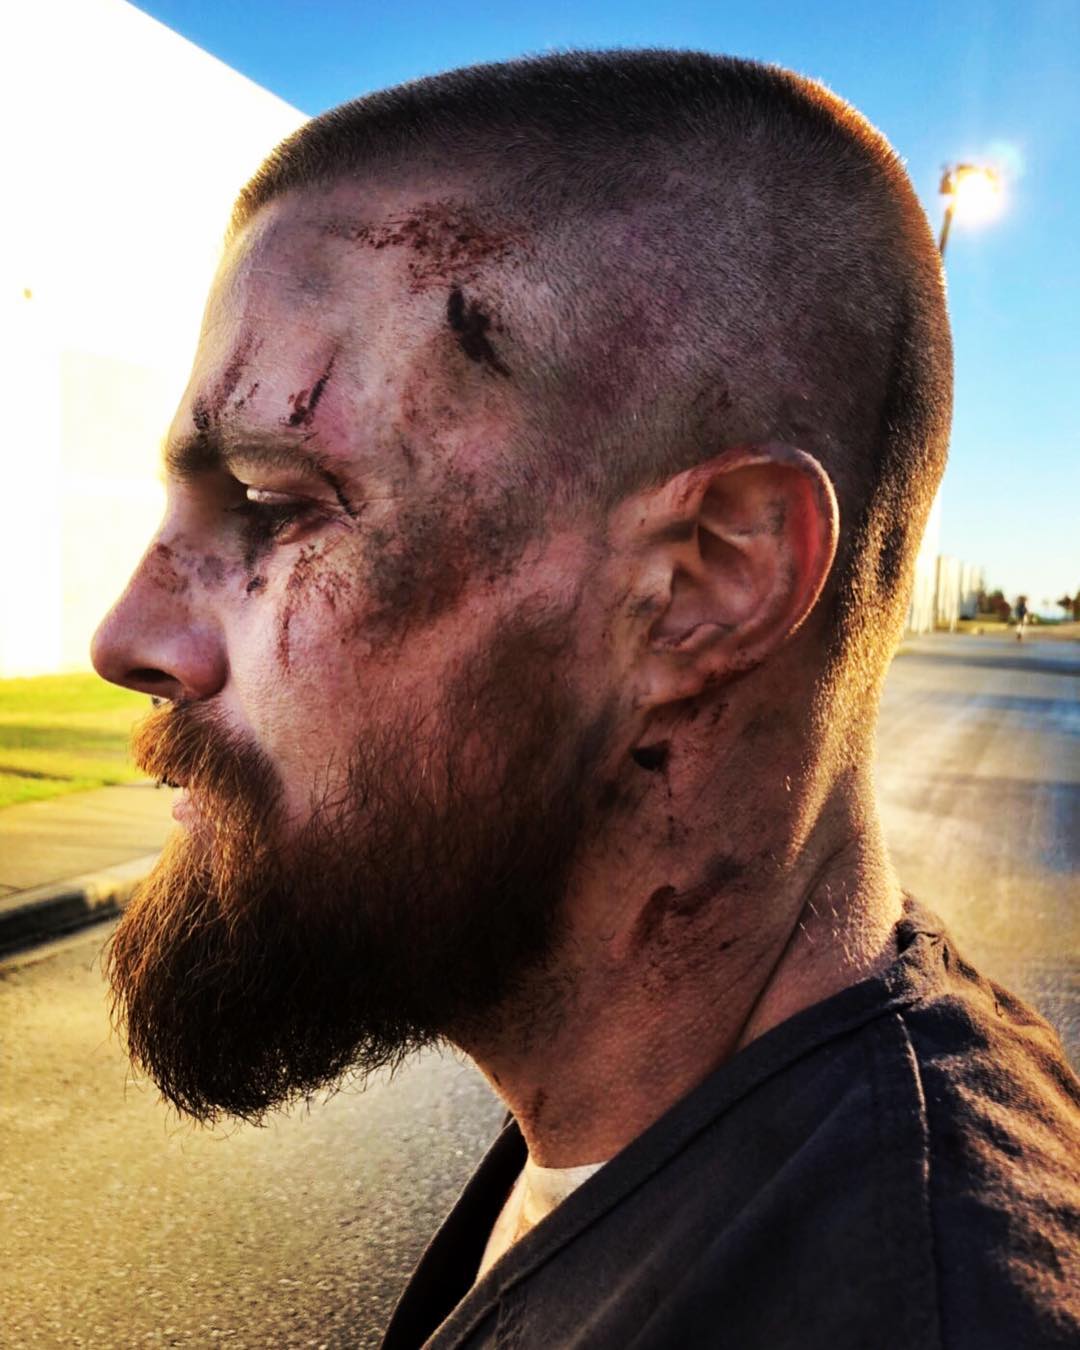 Stephen Amell divulga foto de Arrow em que aparece cheio de ferimentos | Pipoca Moderna